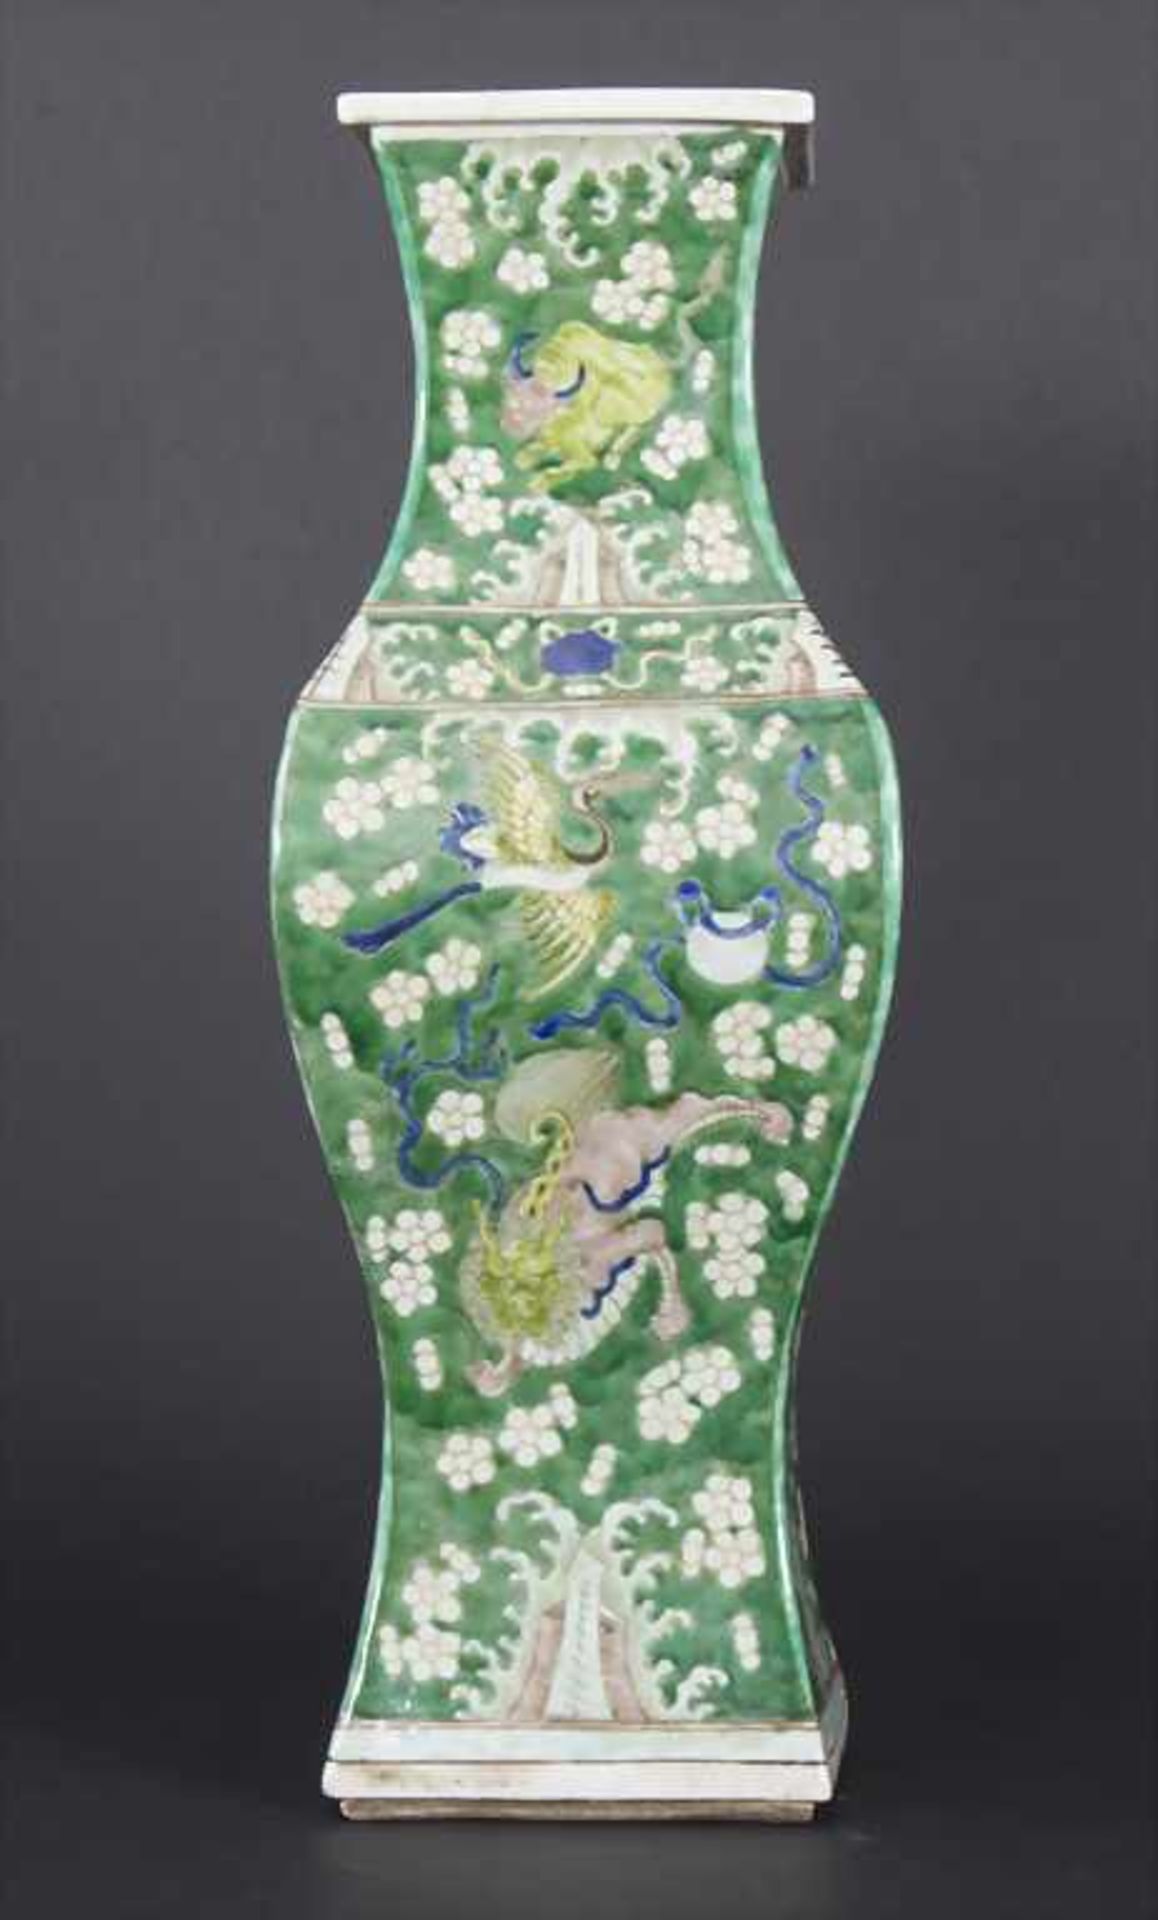 Ziervase, China, späte Qing-Dynastie, 19./20. Jh.Material: Porzellan, polychrom bemalt,Marke/ - Bild 10 aus 17